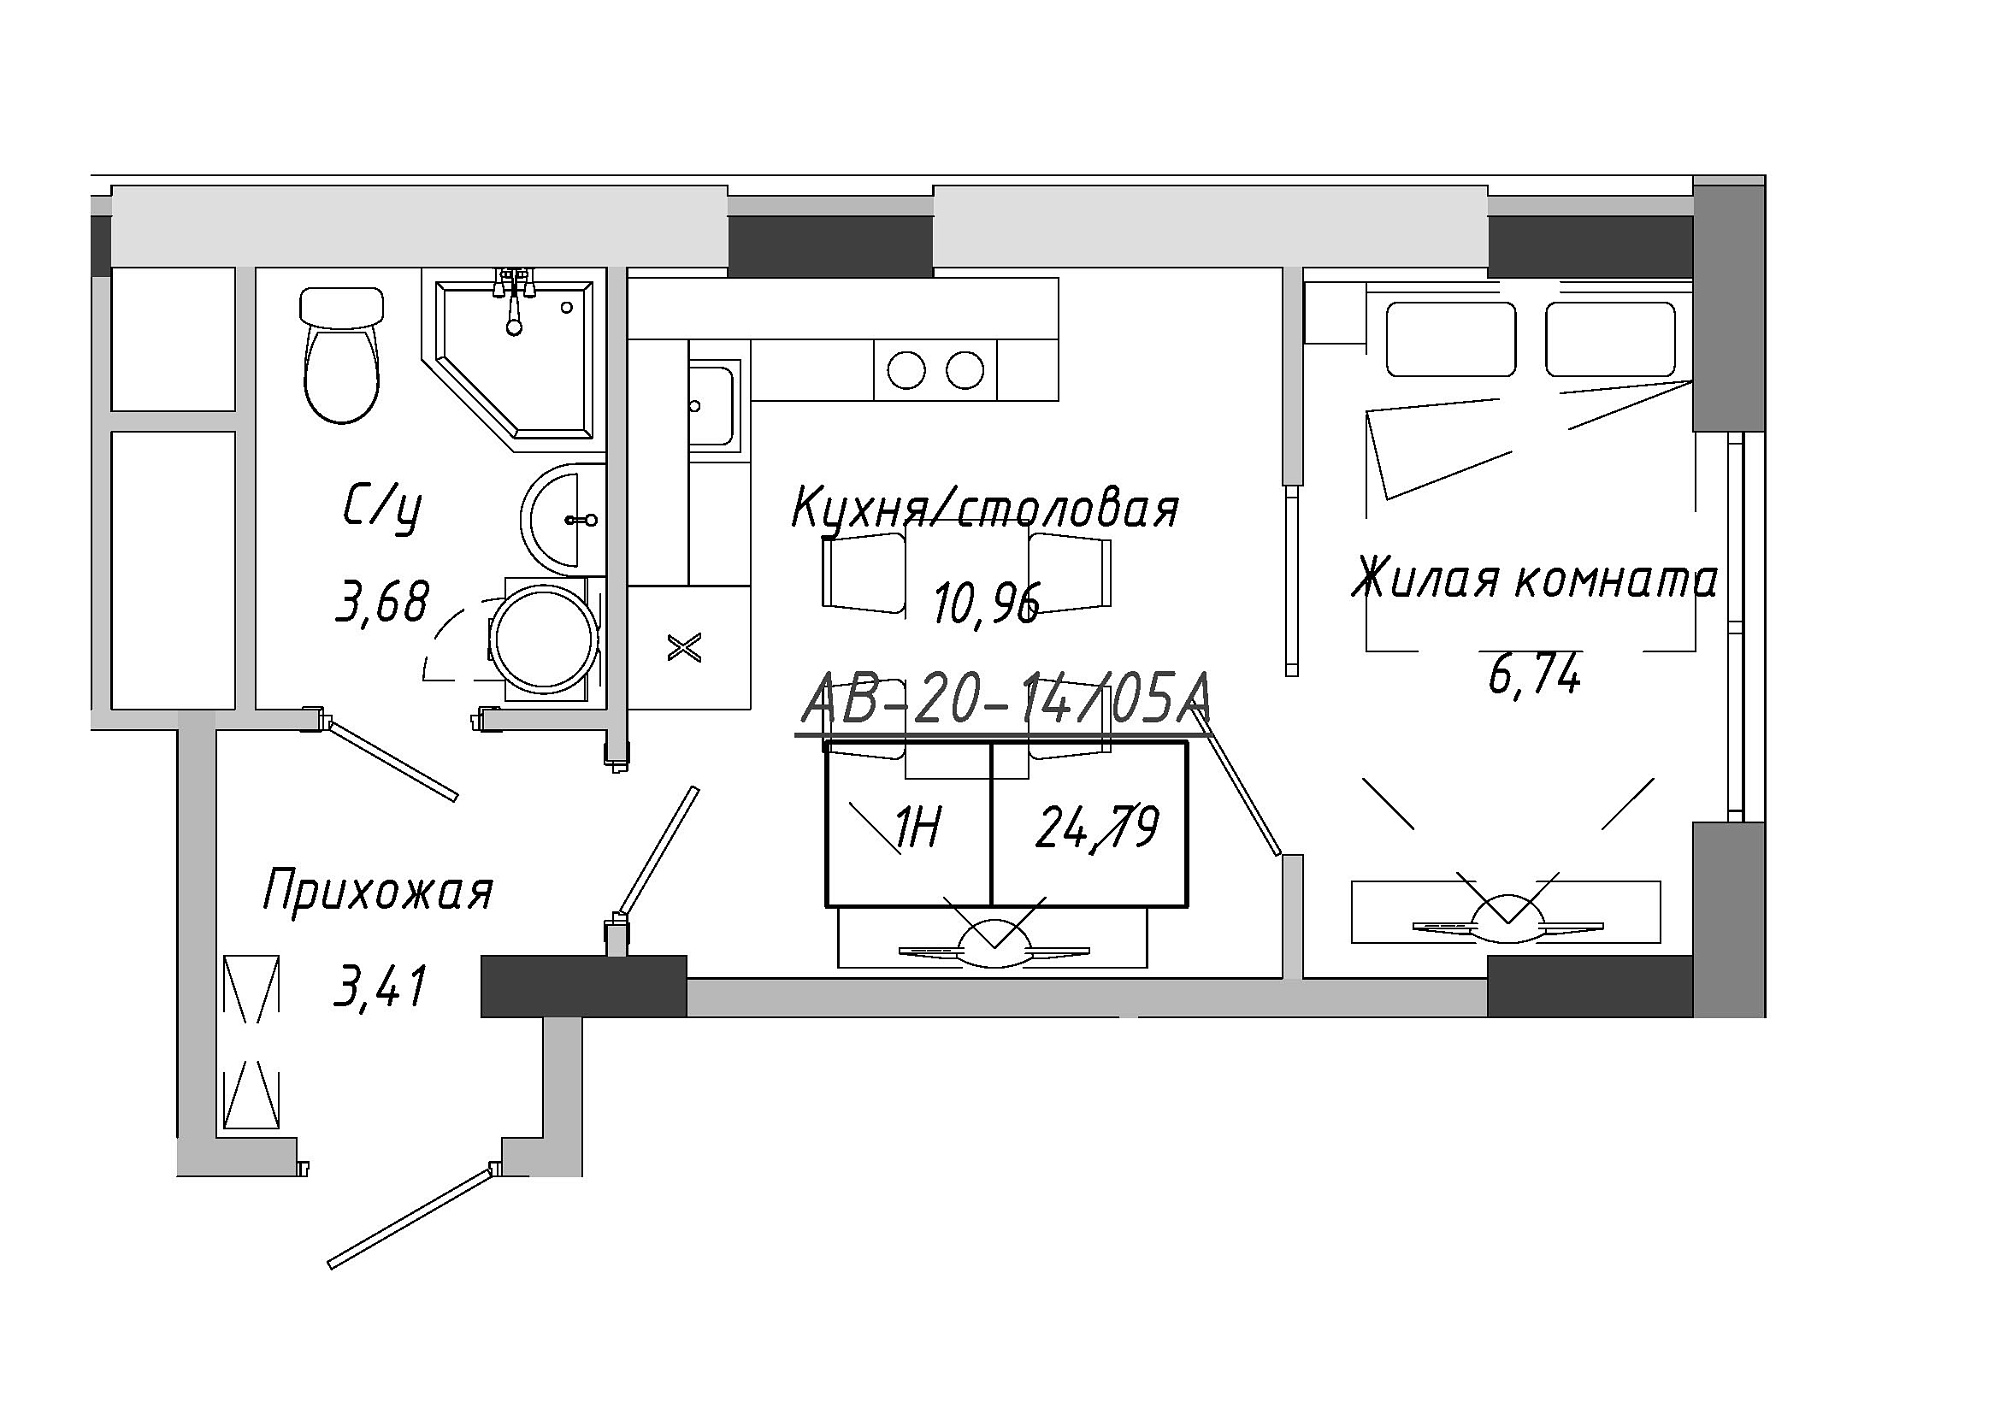 Планировка 1-к квартира площей 24.79м2, AB-20-14/0105a.